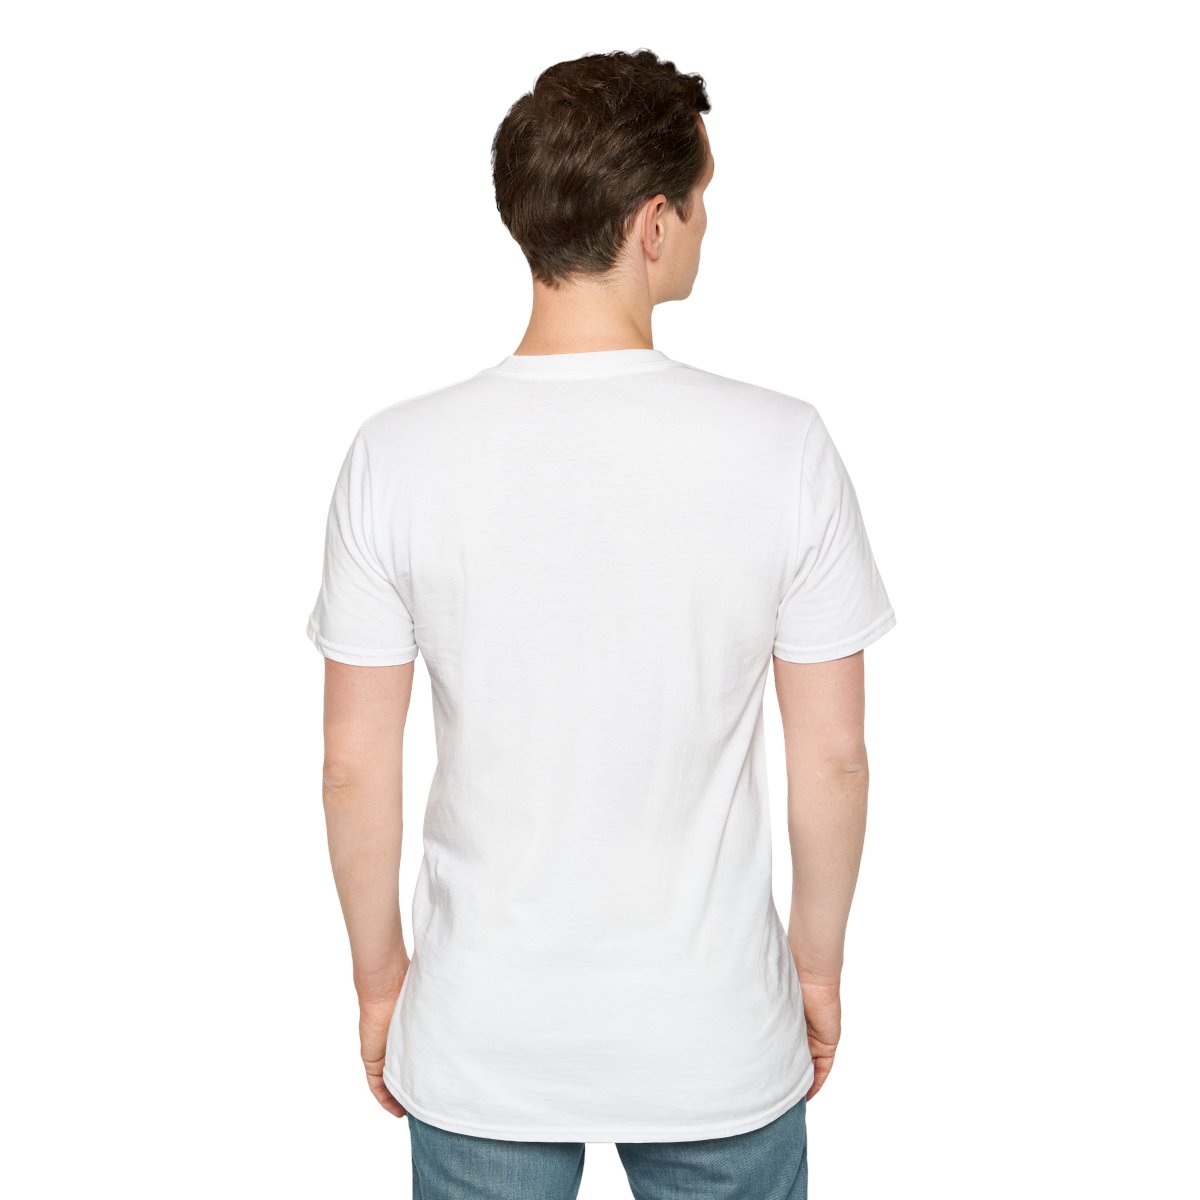 Unisex Softstyle T-Shirt (Black Logo) product thumbnail image